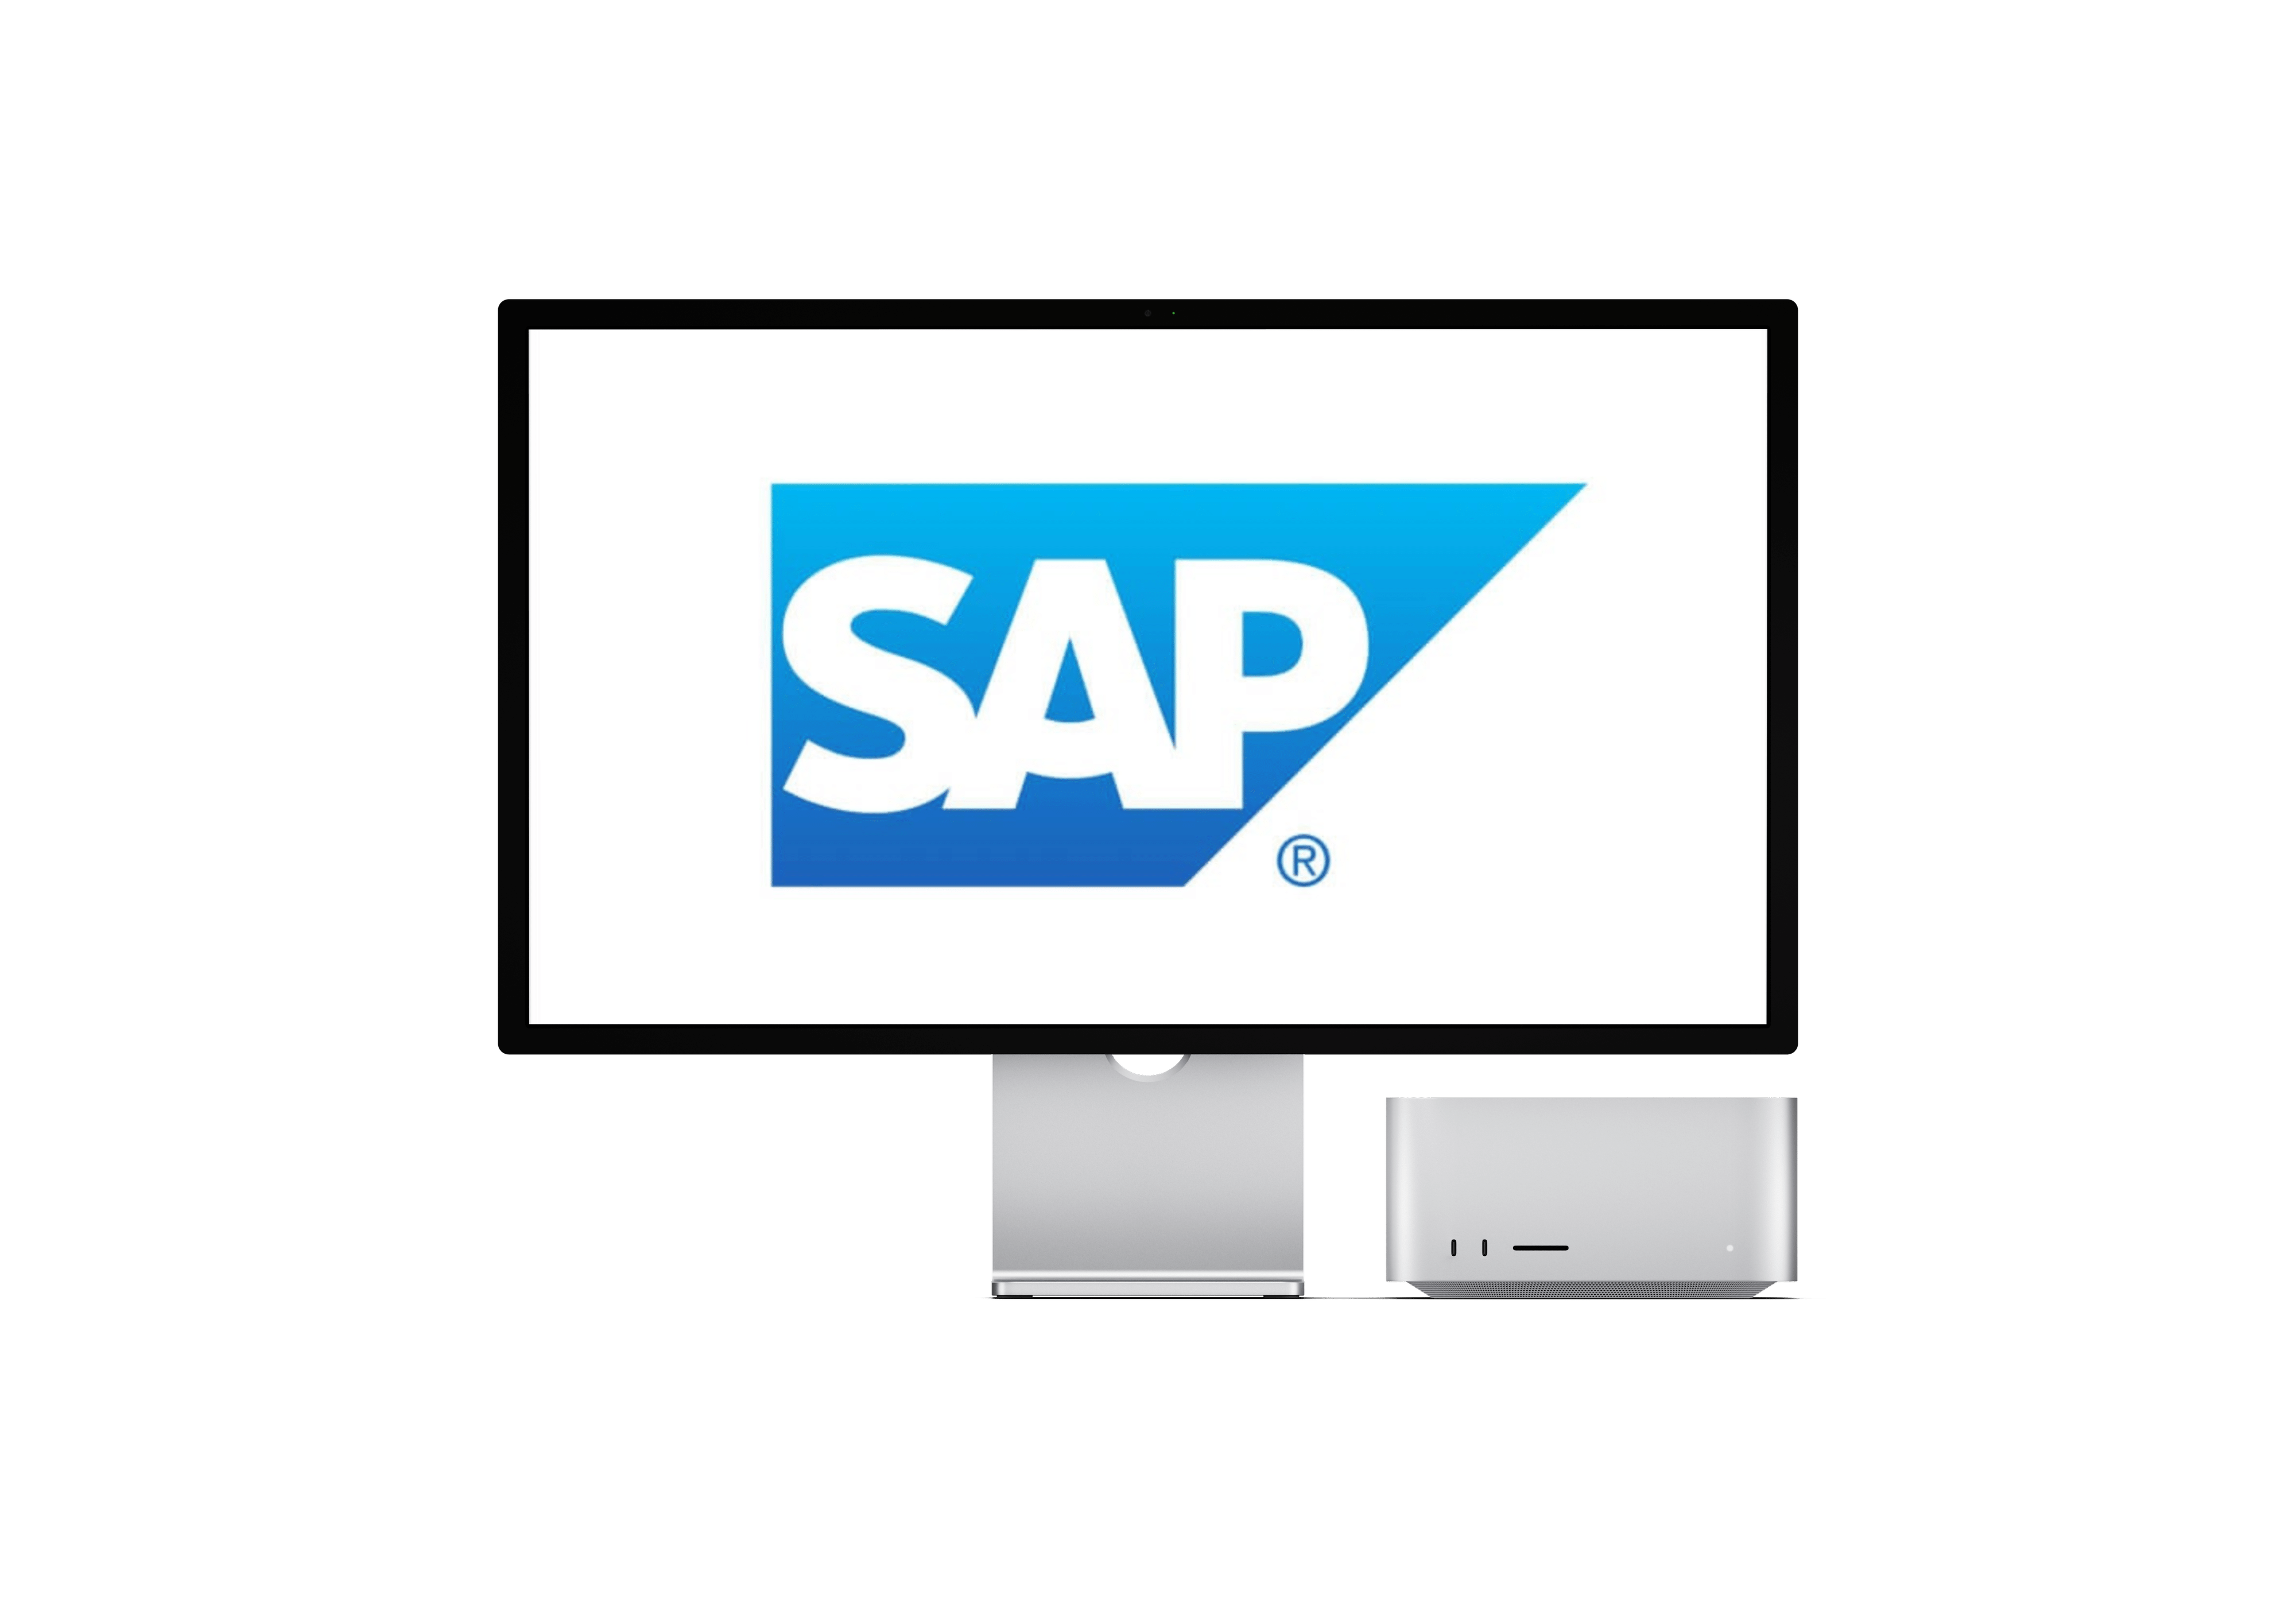 Neuer SAP-Konnektor für leichtere Bedienbarkeit und mehr Sicherheit